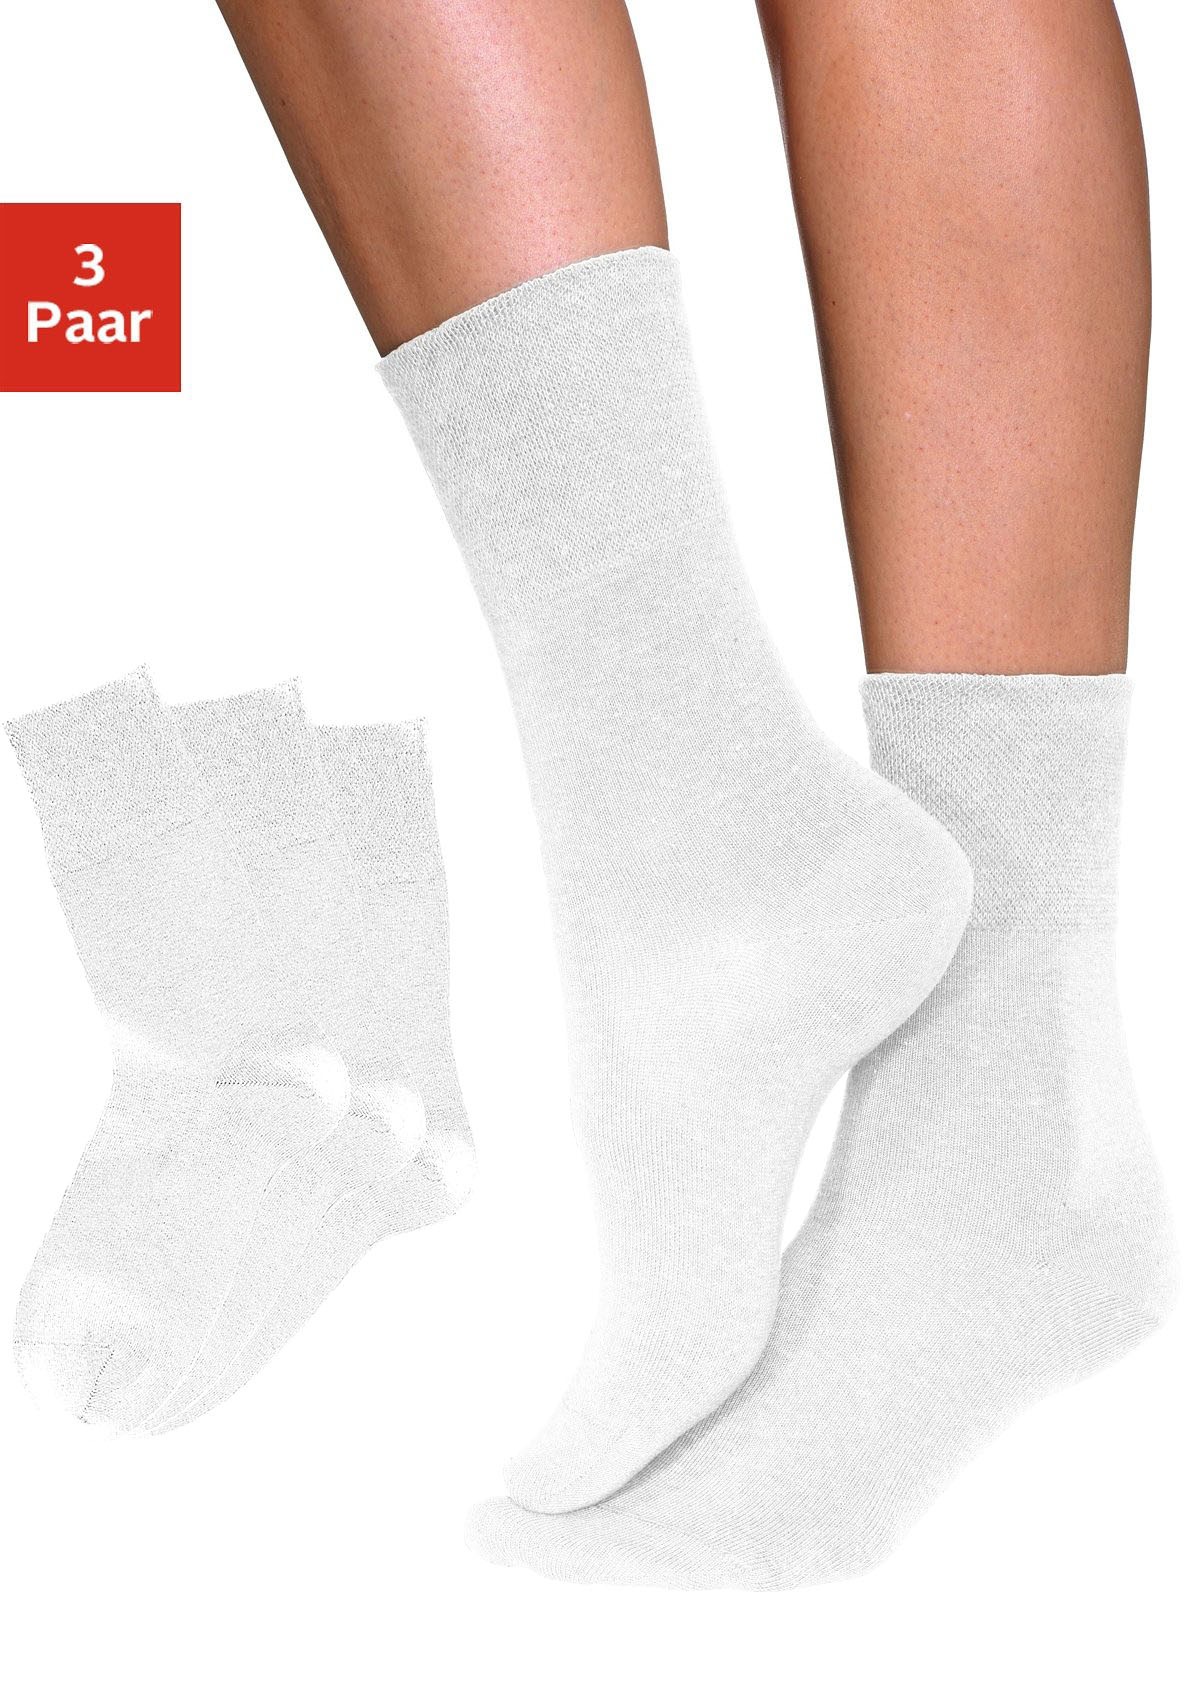 Image of H.I.S Socken, (3 Paar), mit Komfortbund auch für Diabetiker geeignet